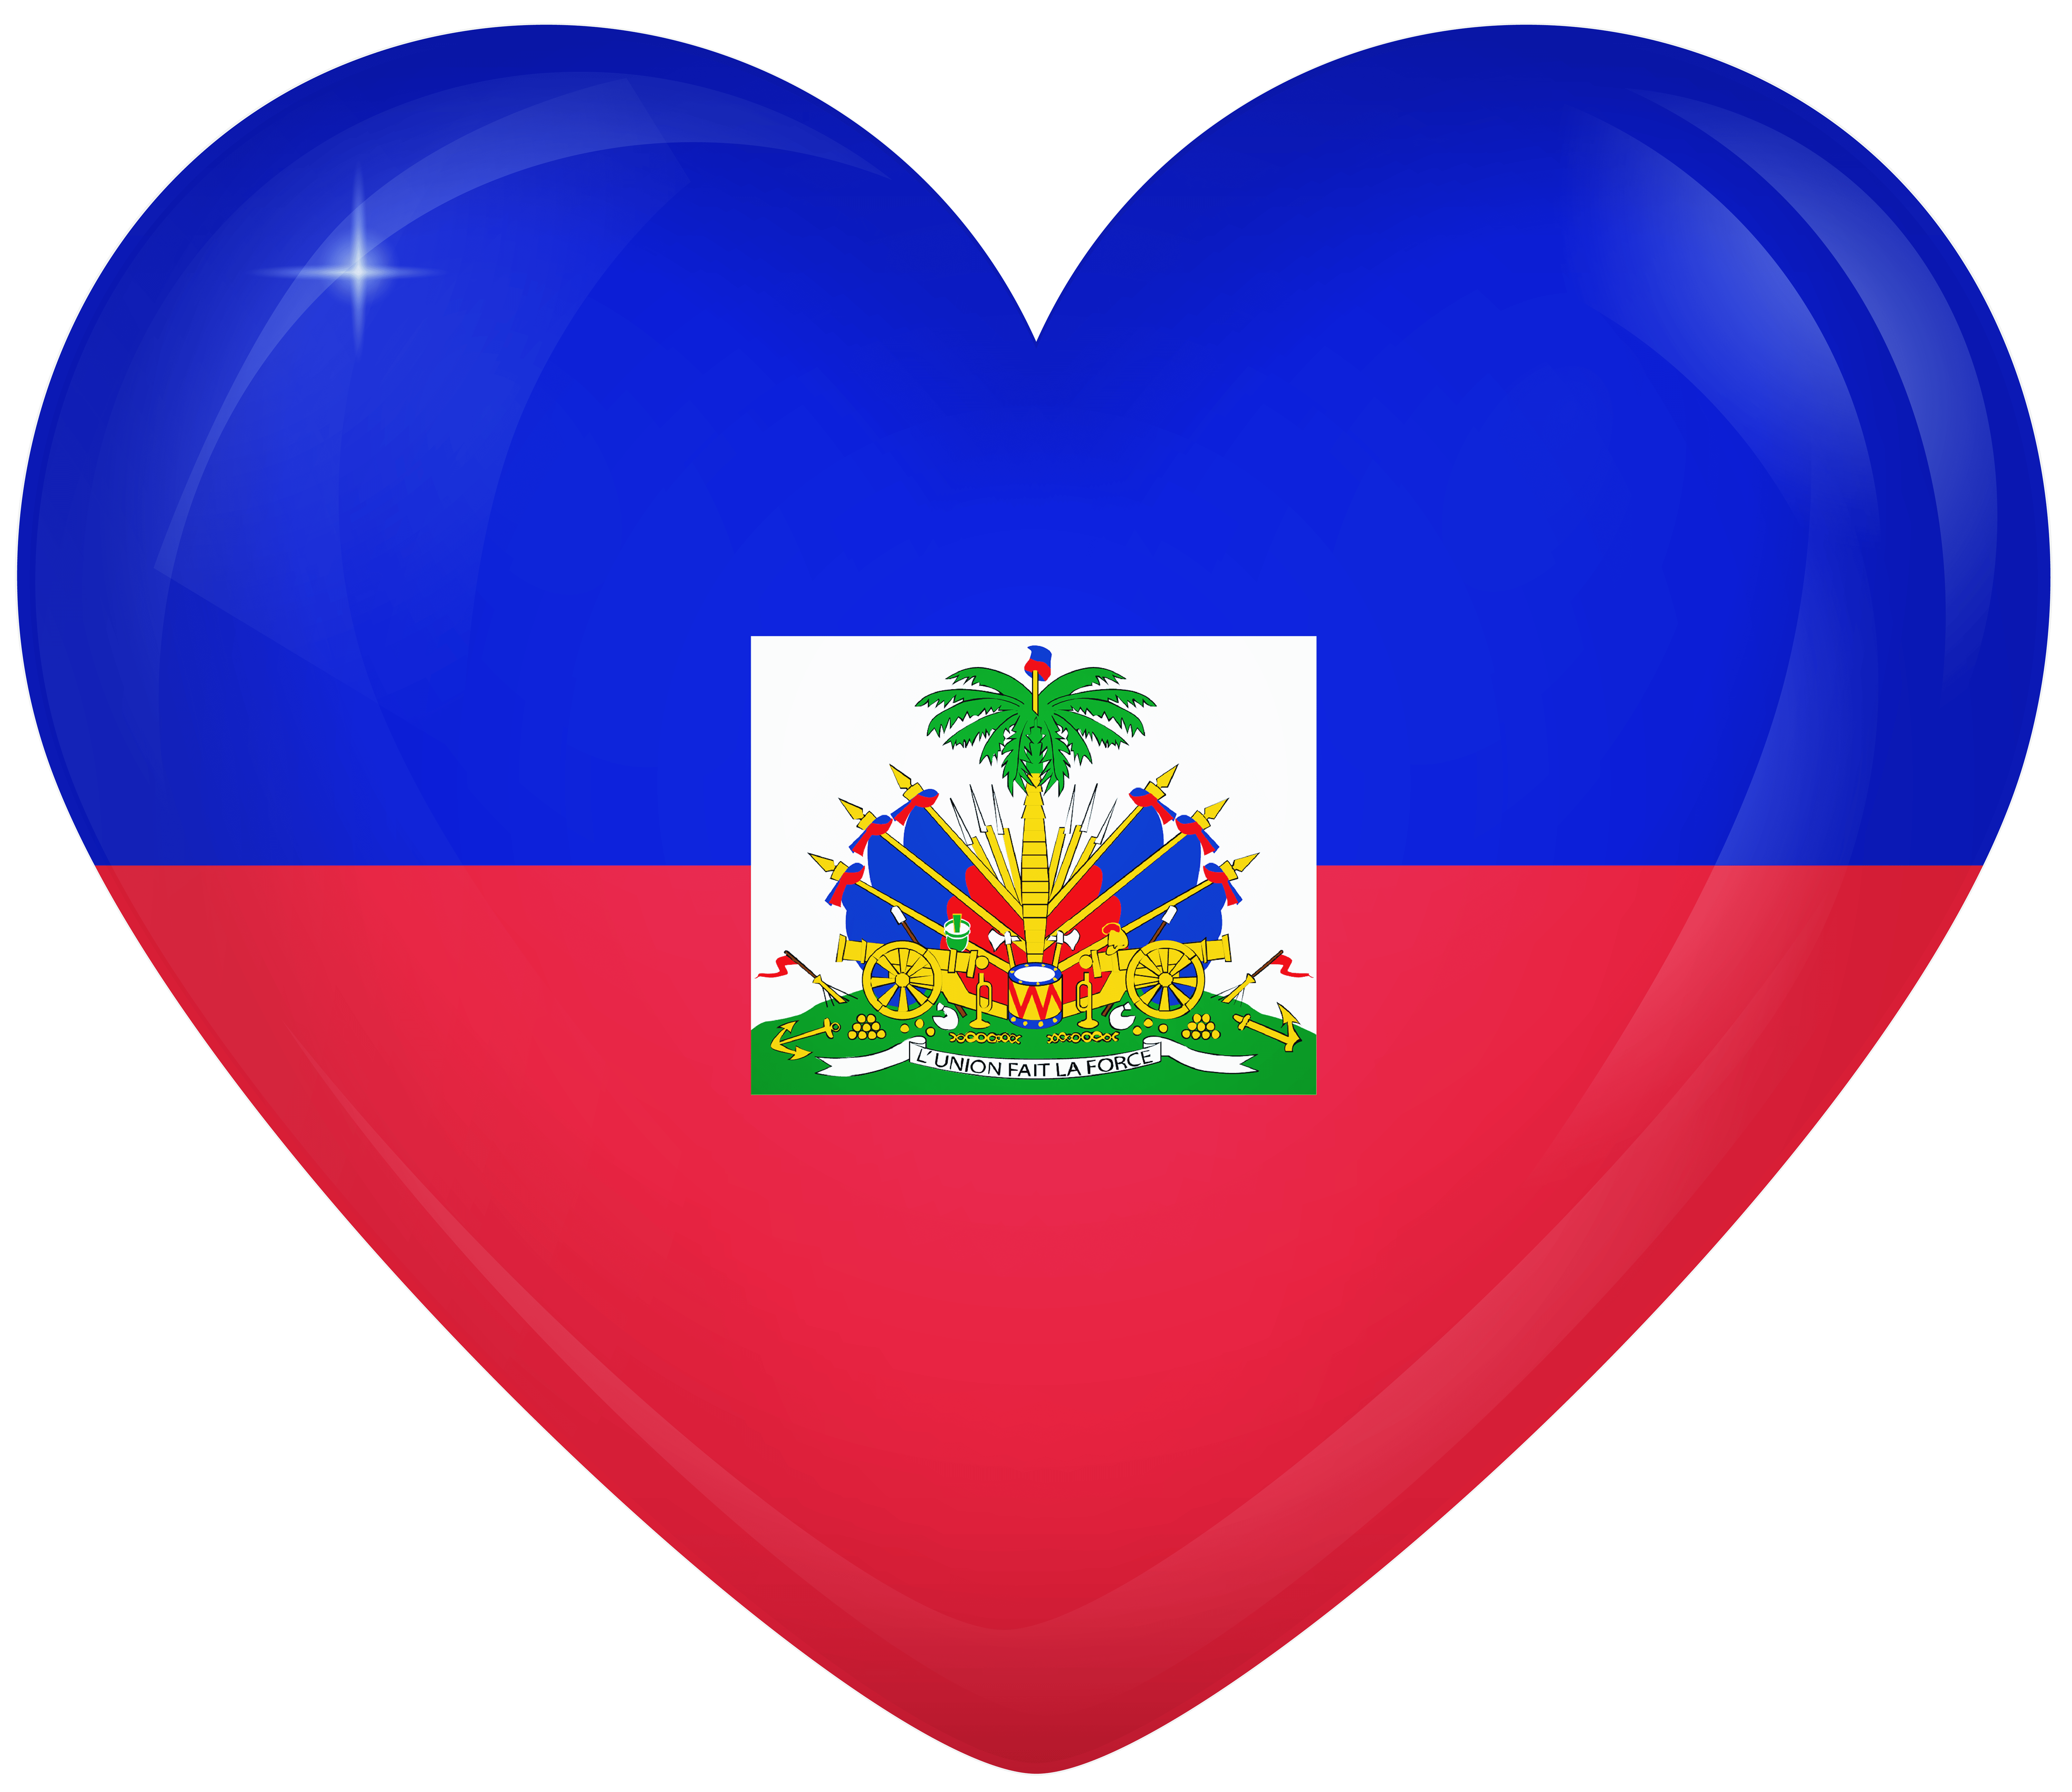 Haiti Large Heart Flag Quality Image